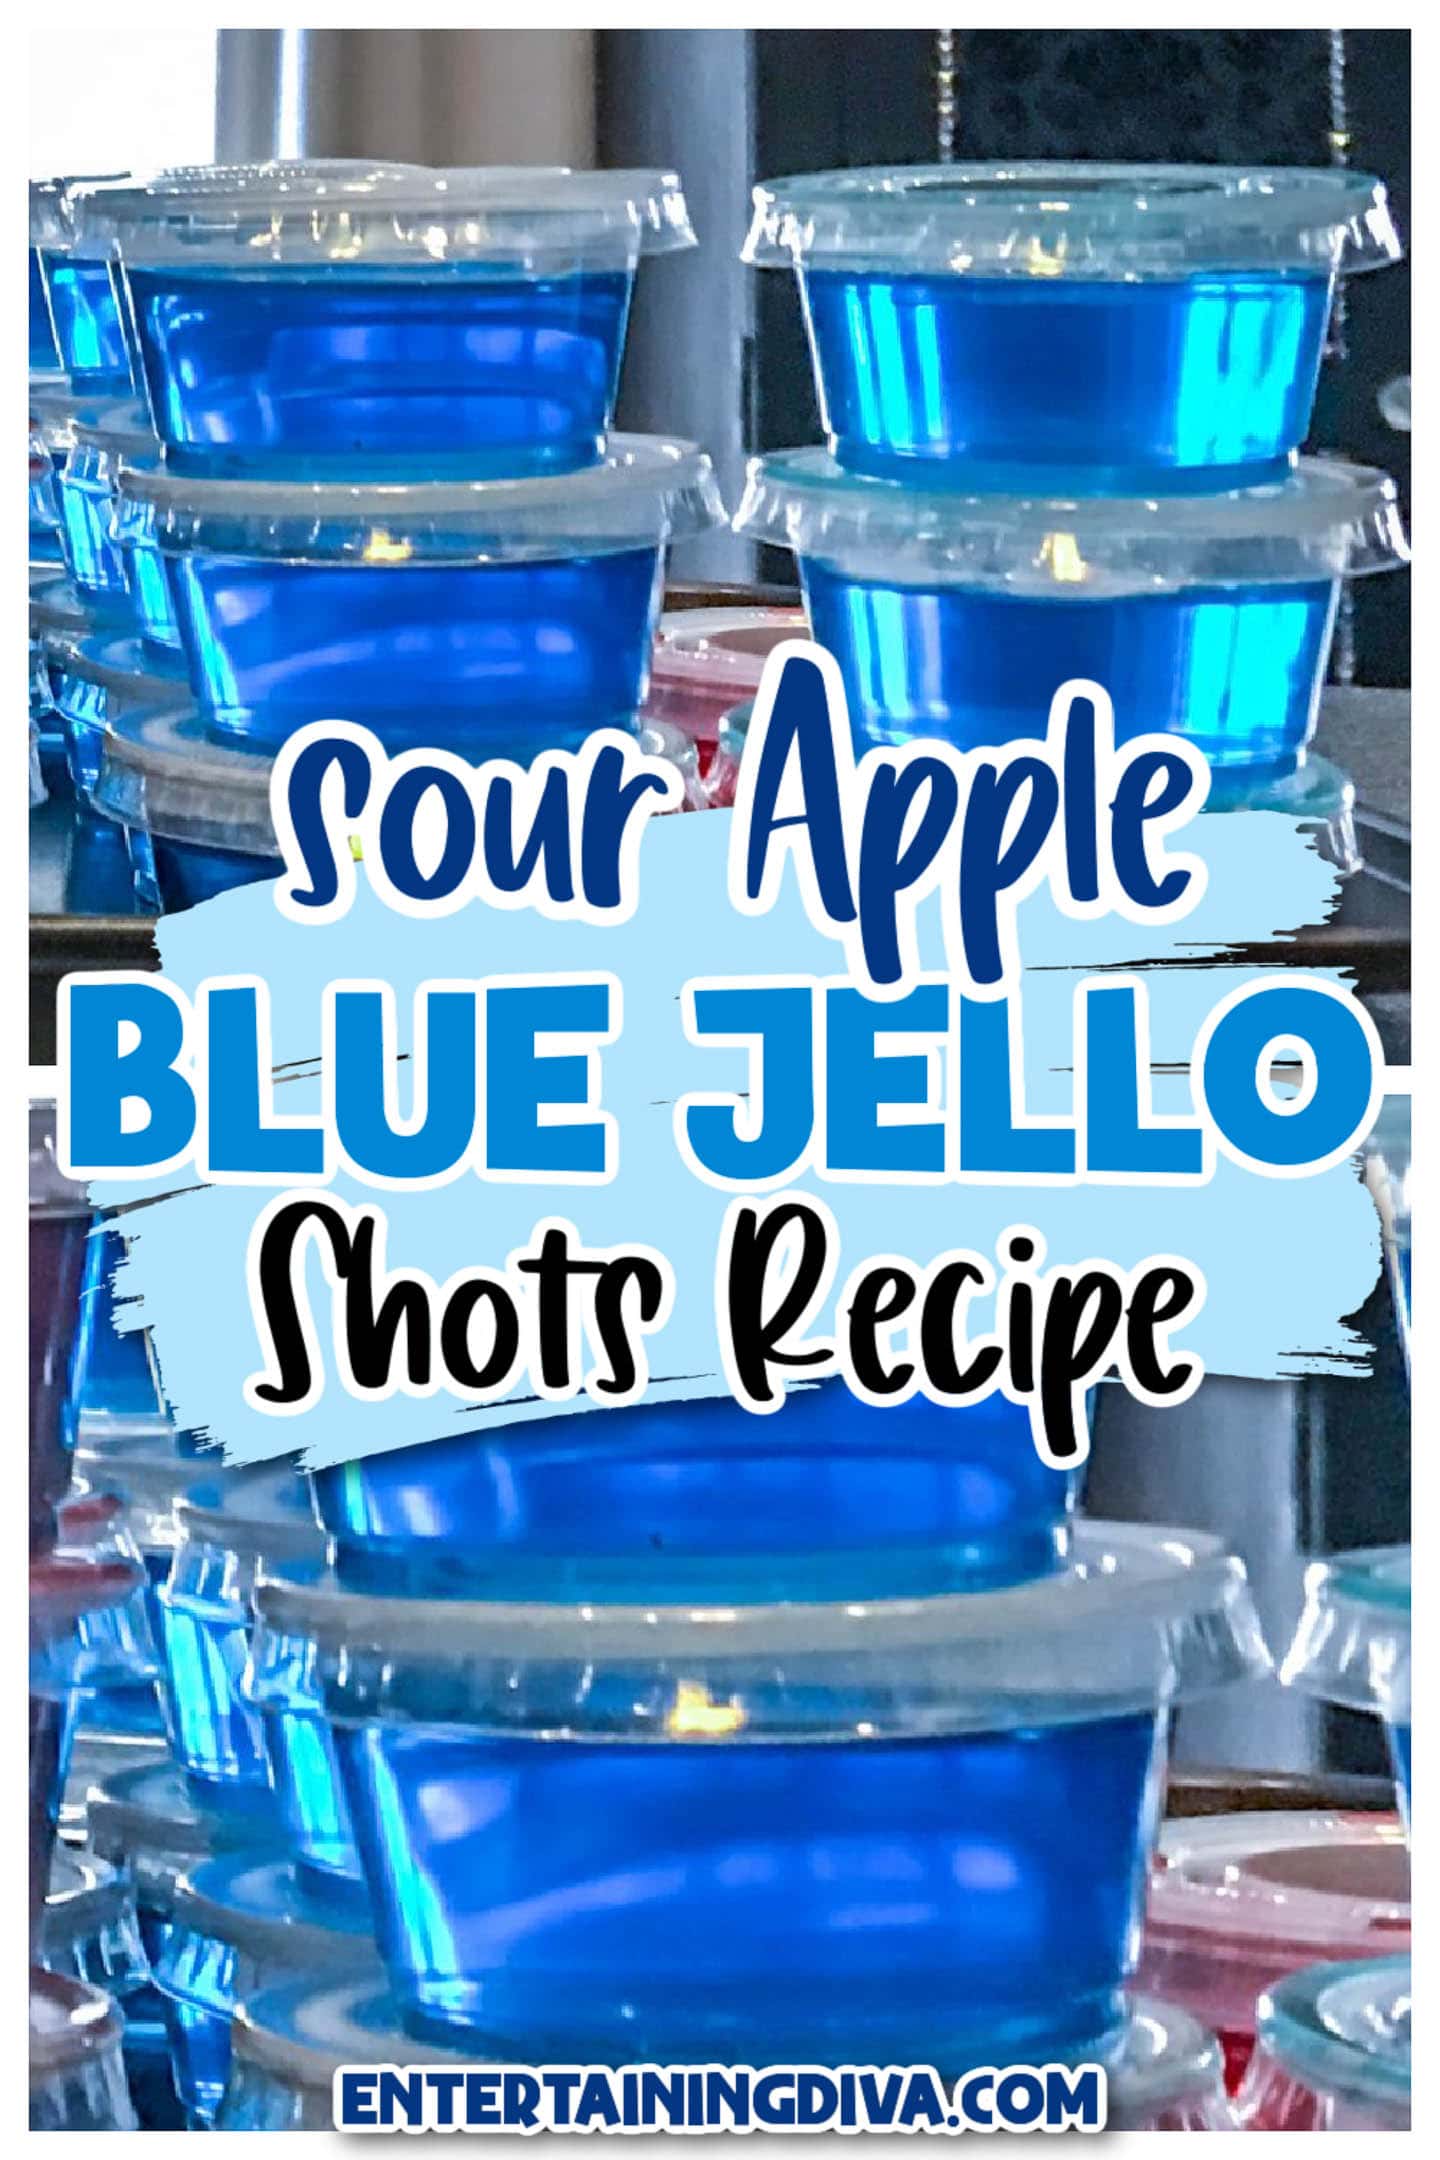 sour apple blue jello shots